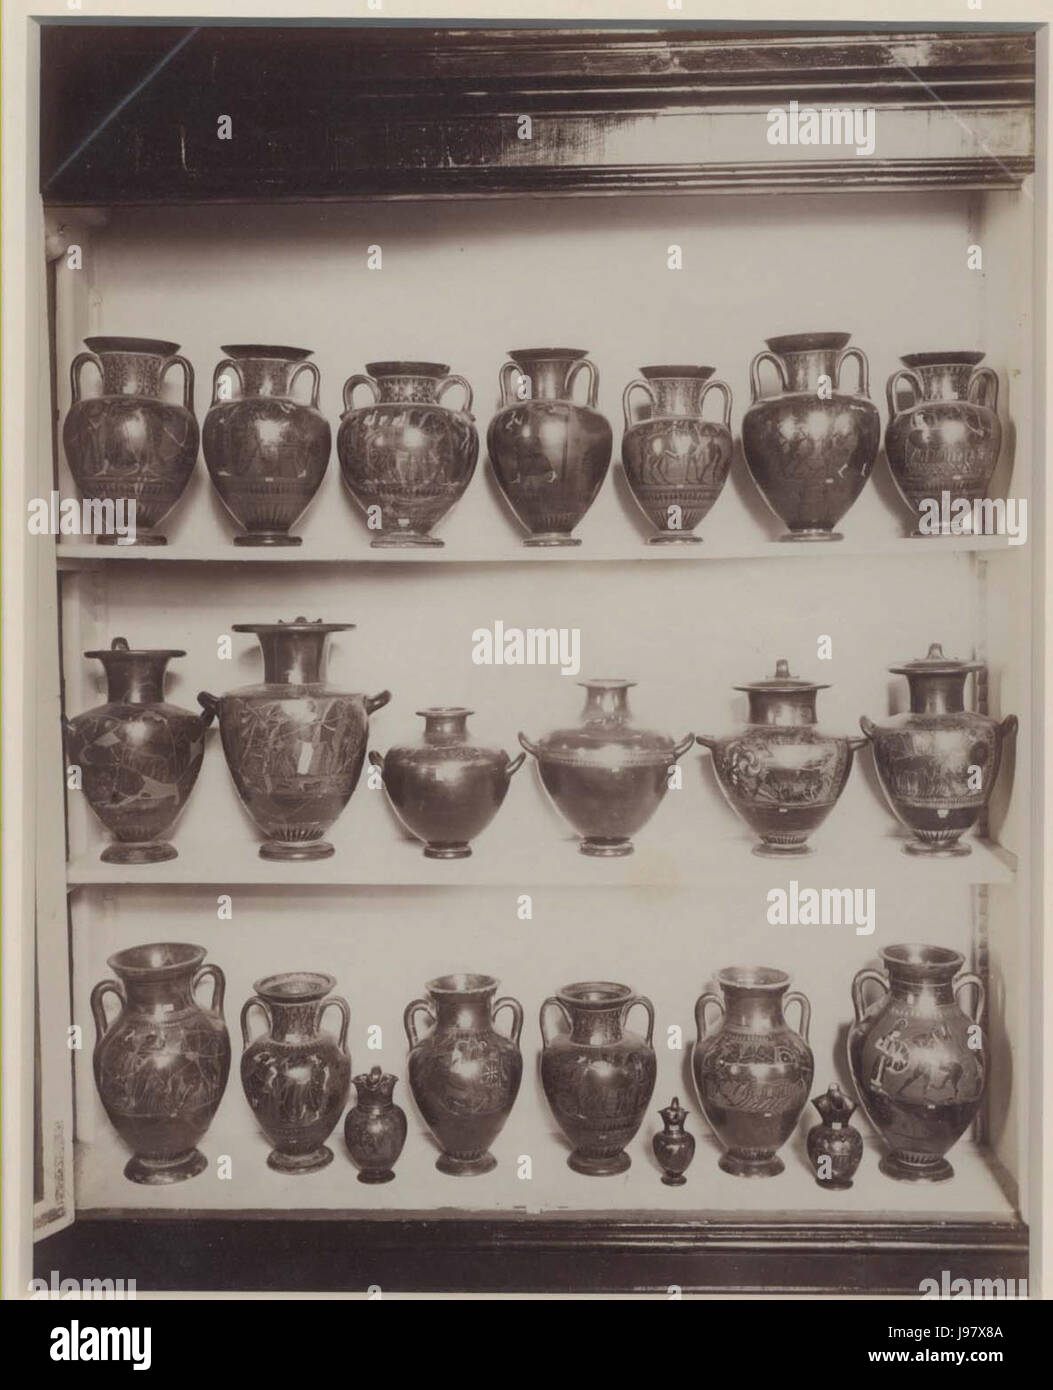 Sommer, Giorgio (1834 1914)   Vasi antichi nel Museo archeologico nazionale di Napoli   02 Stock Photo